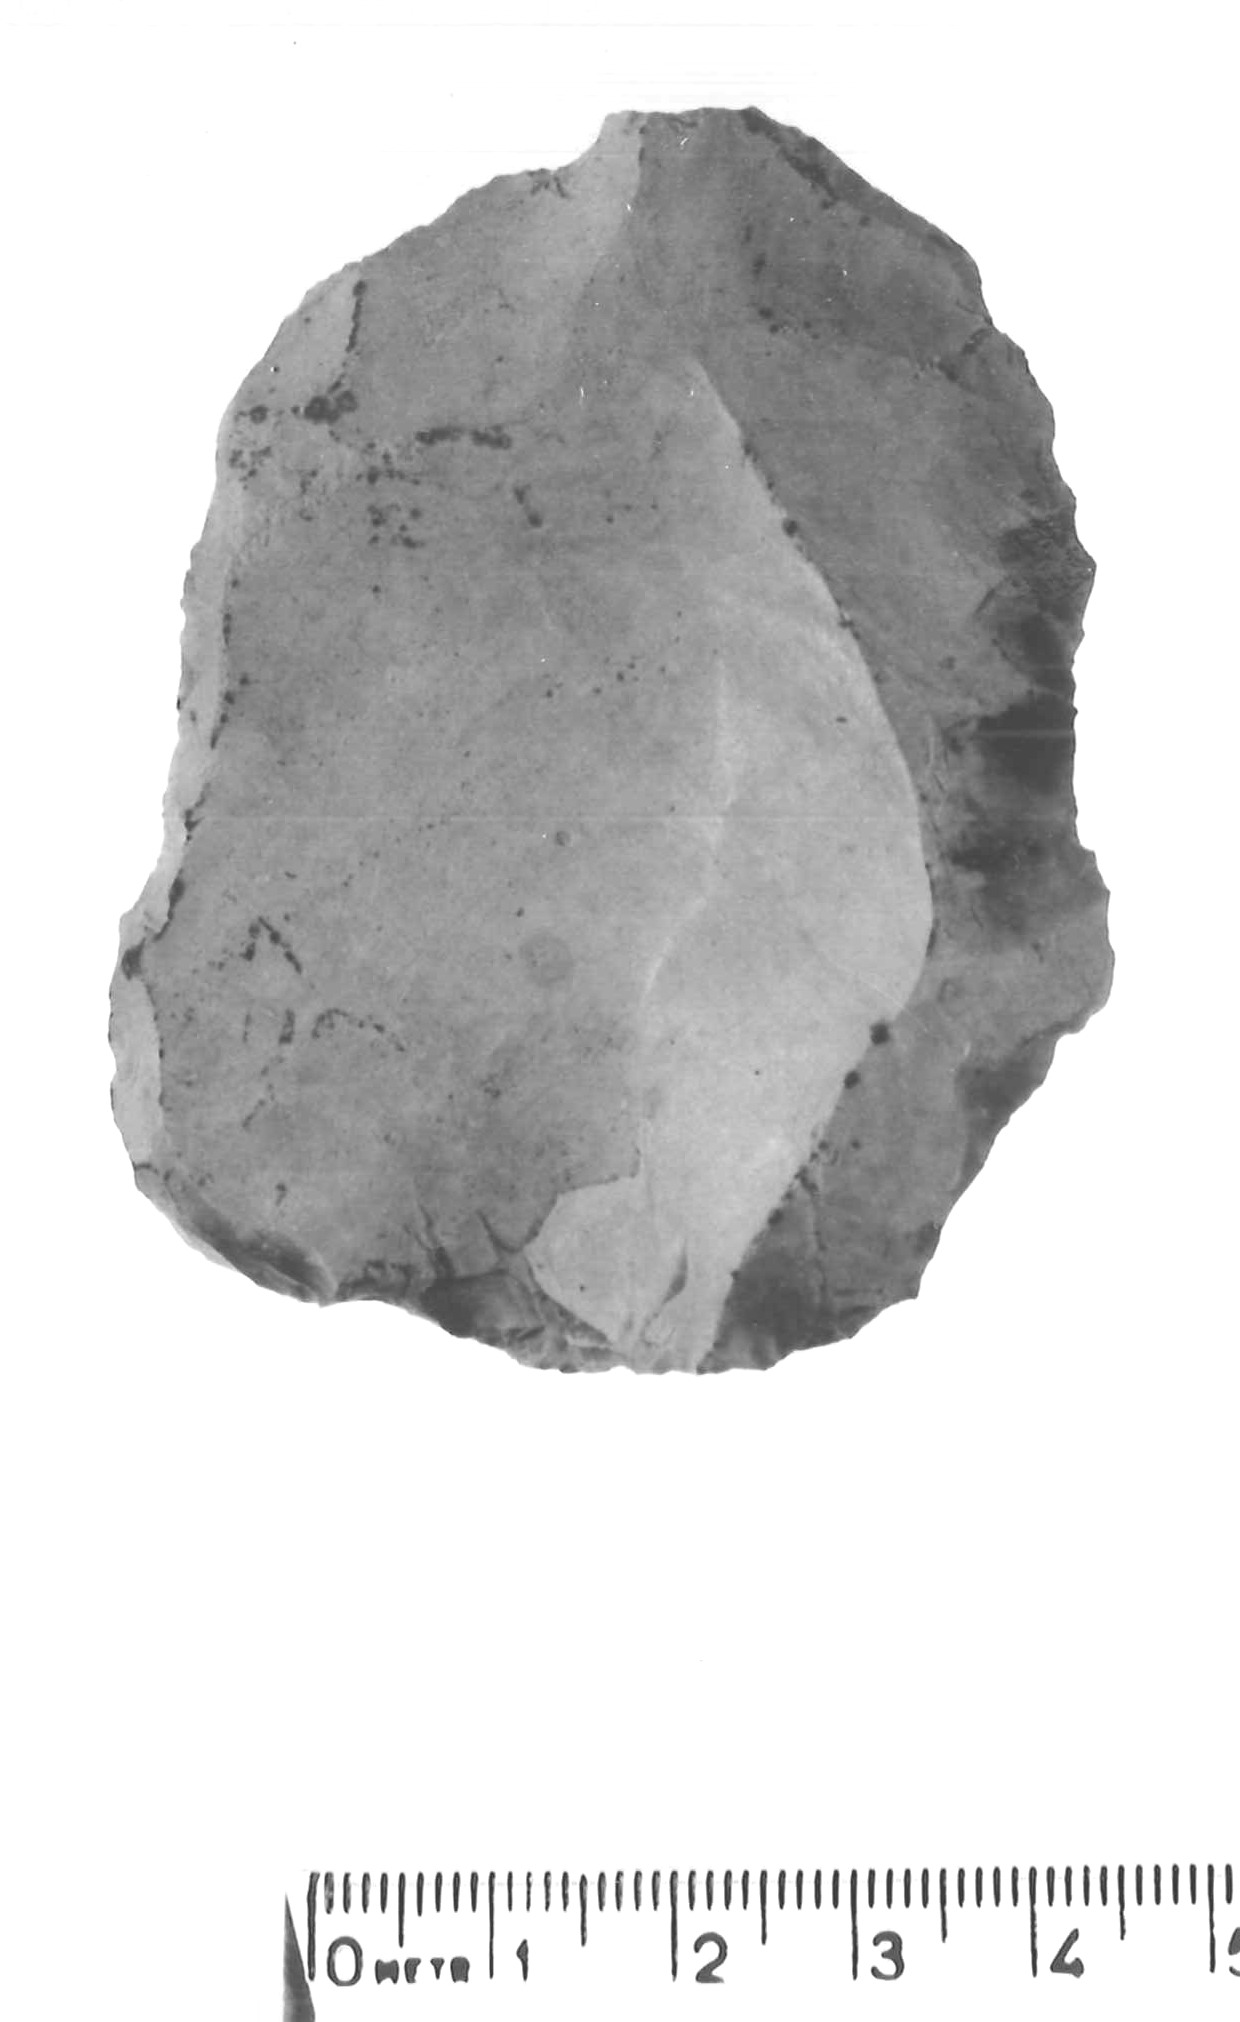 nucleo Levallois - musteriano (paleolitico medio)